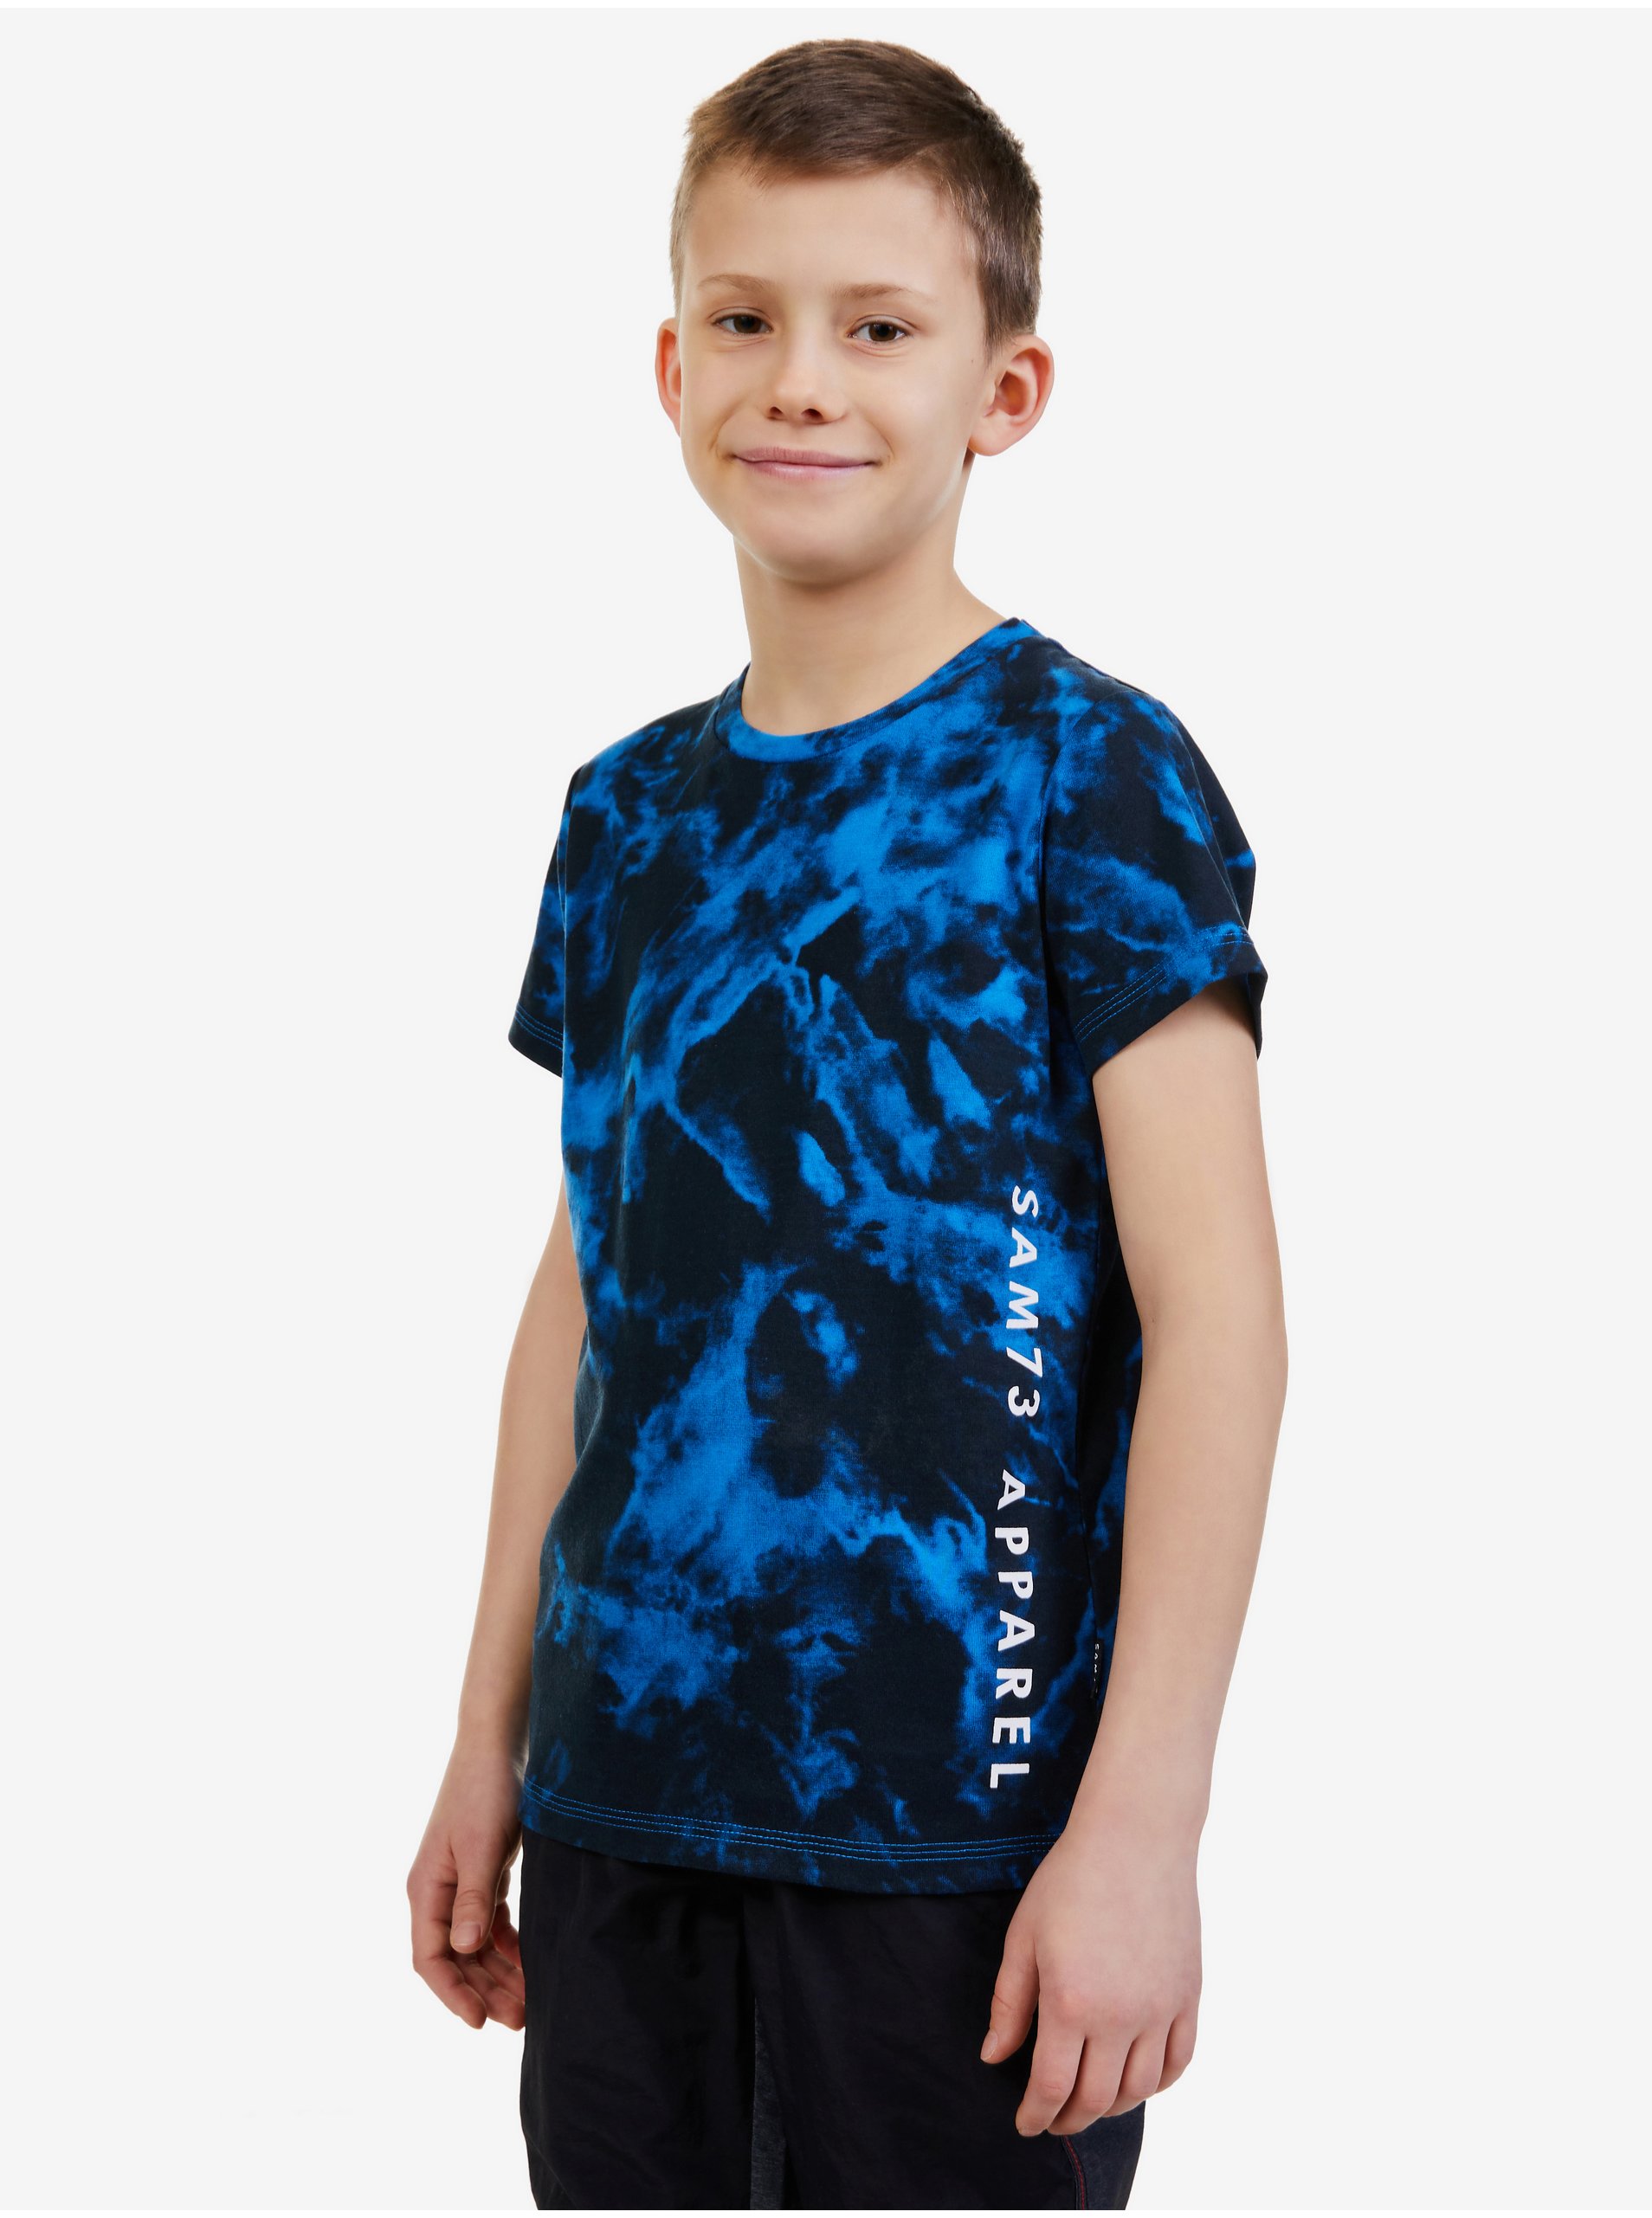 Lacno Tmavomodré chlapčenské vzorované tričko SAM 73 Sylvester